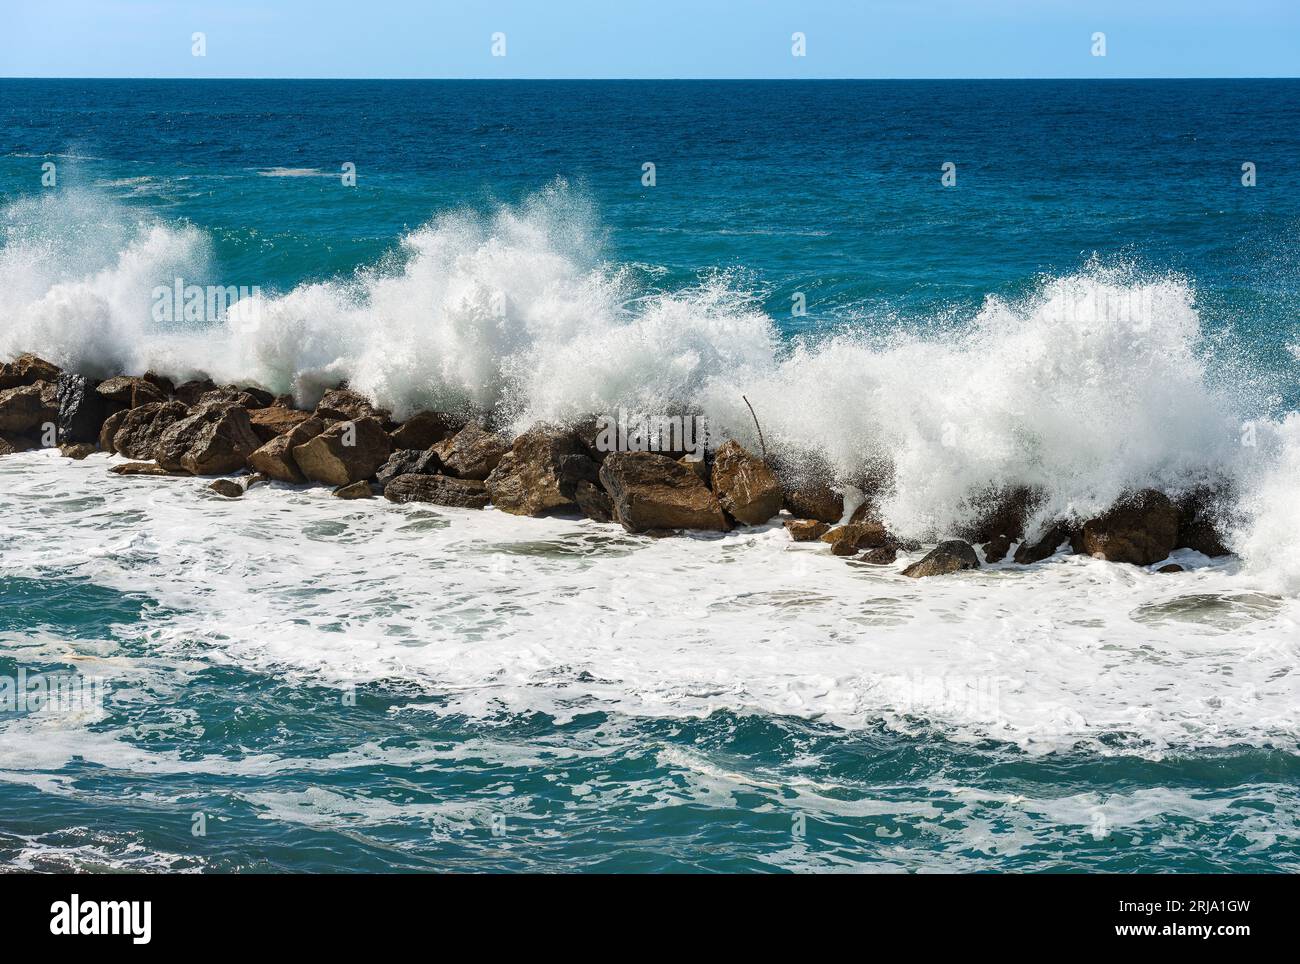 Grandi onde bianche del mare si infrangono sulle rocce. Breakwater vicino al piccolo villaggio di Framura. La Spezia, Liguria, Italia, Europa. Mar Mediterraneo. Foto Stock